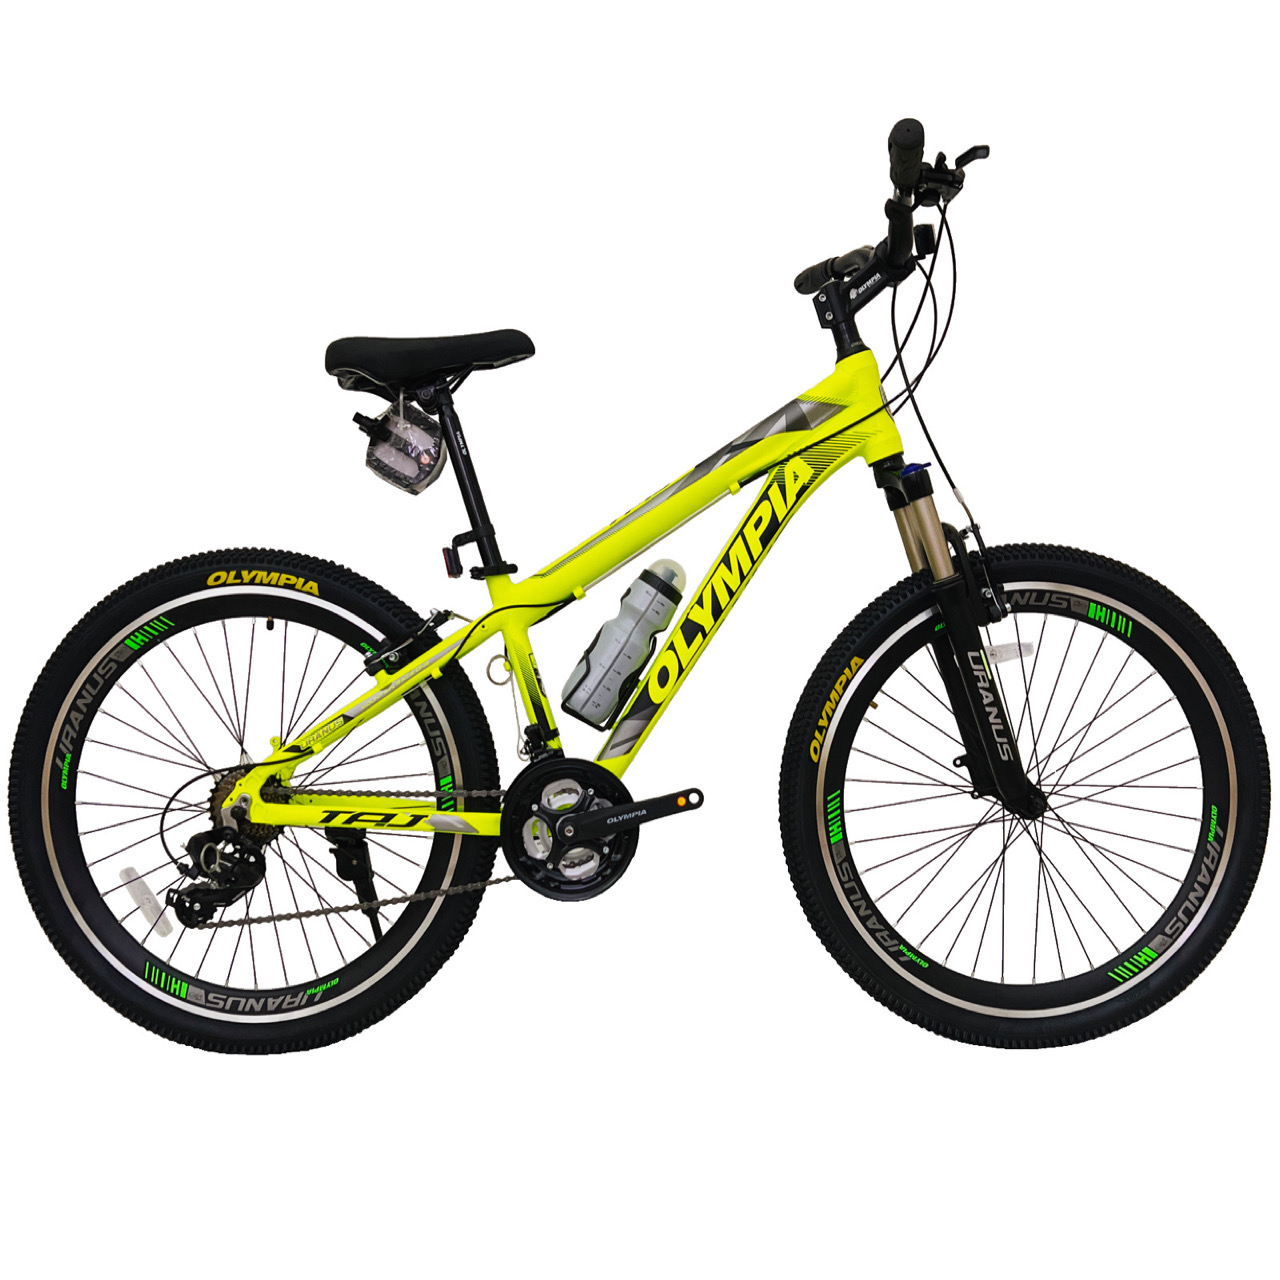 نکته خرید - قیمت روز دوچرخه کوهستان المپیا مدل TAJ کد 14 سایز 26 خرید